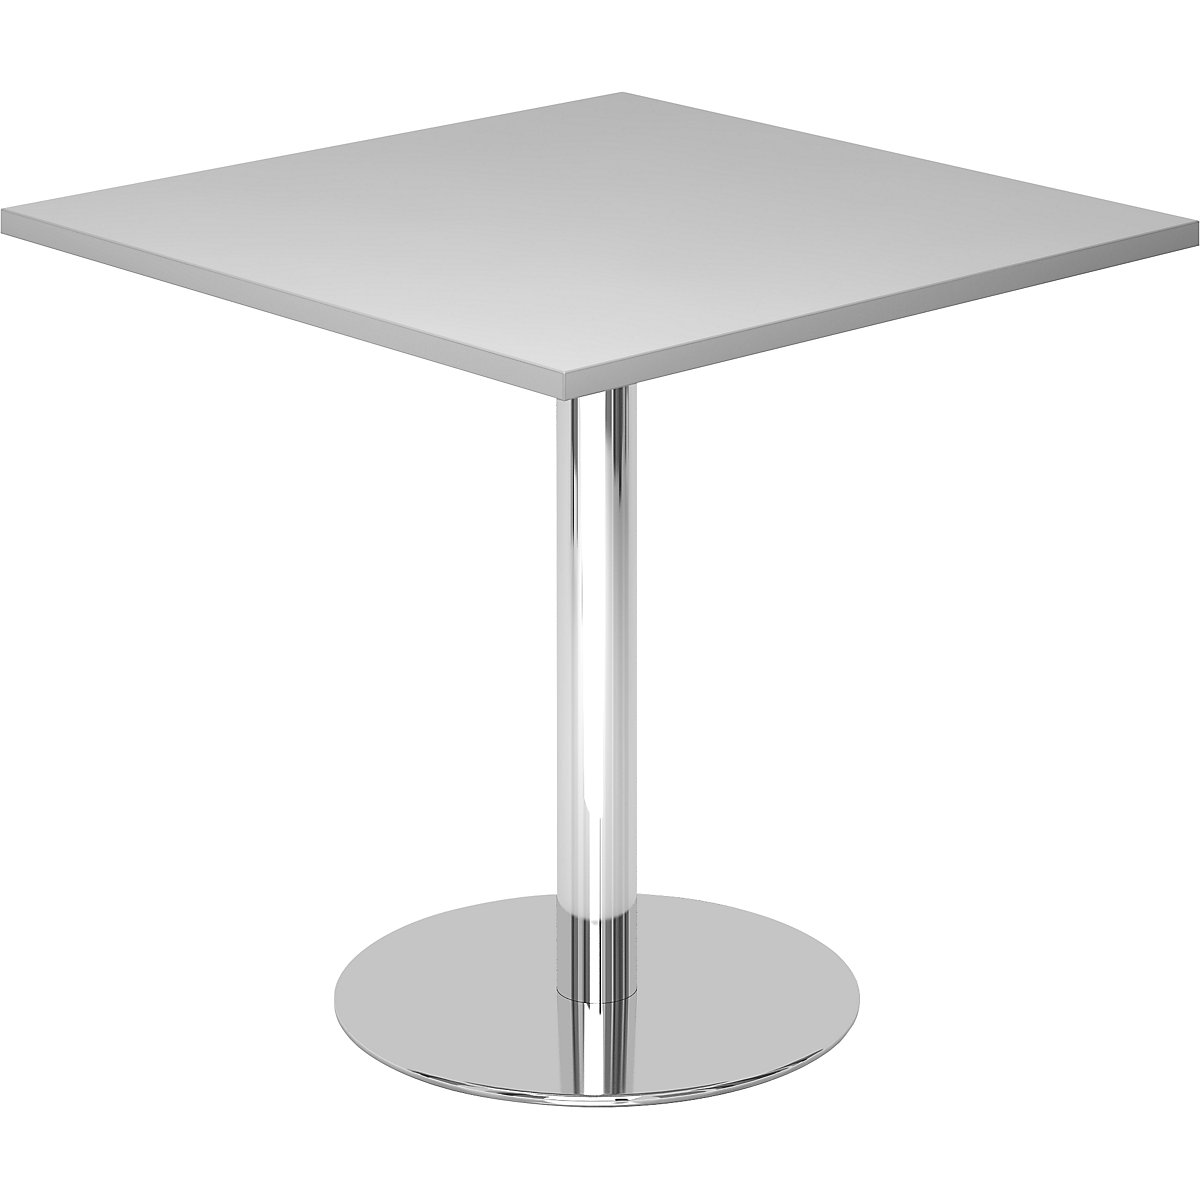 Tárgyalóasztal, h x szé 800 x 800 mm, 755 mm magas, krómozott váz, világosszürke asztallap